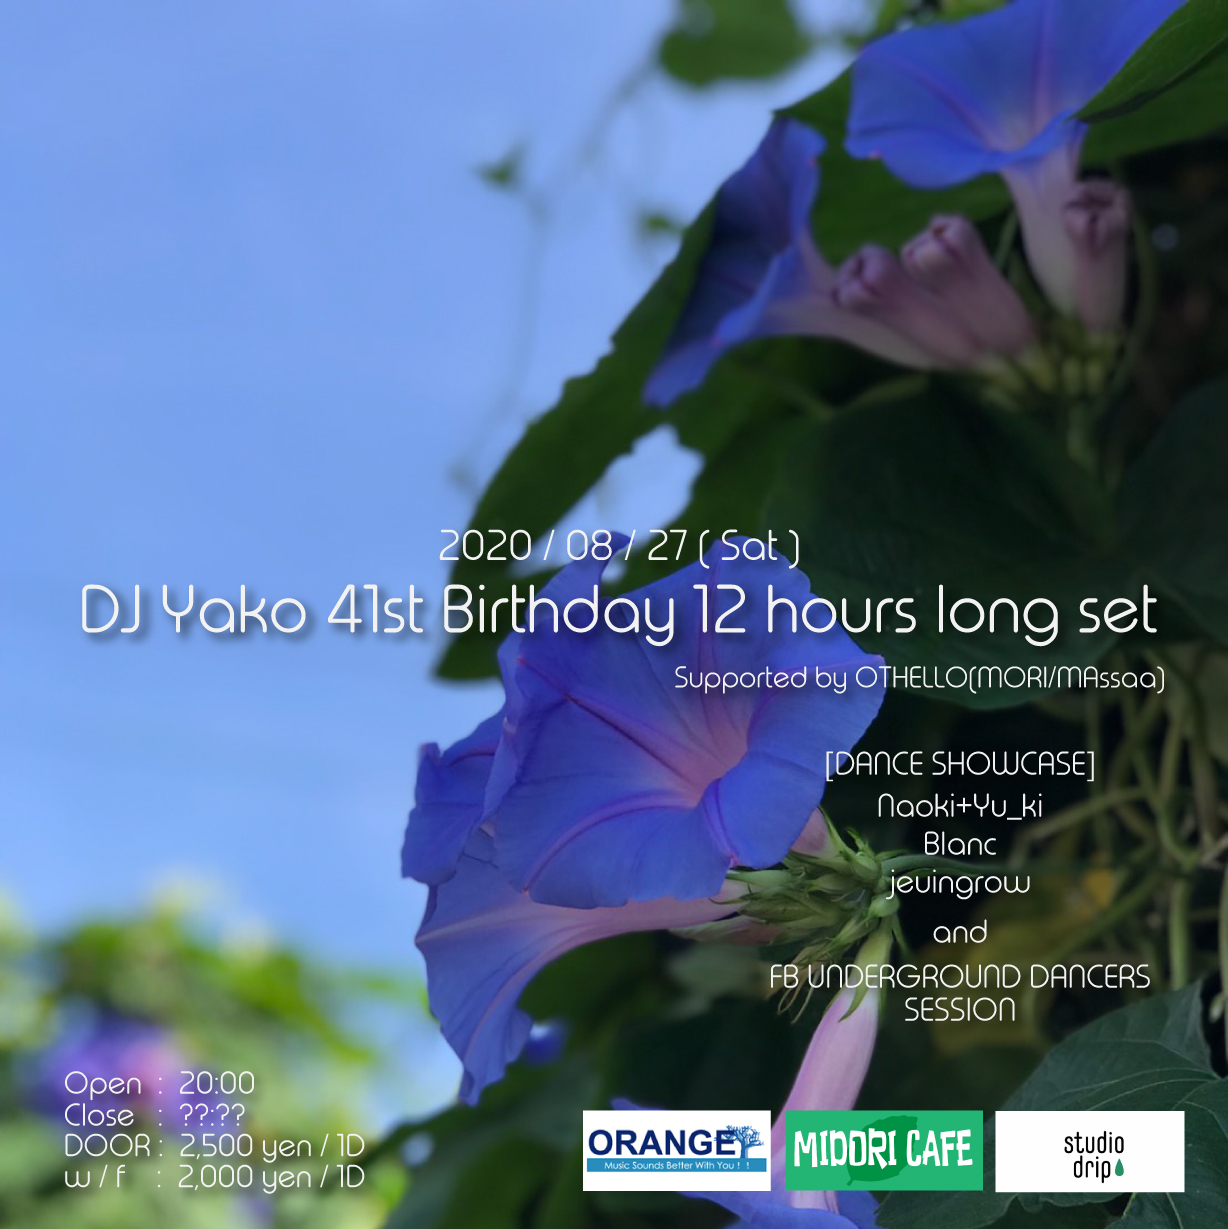 DJ Yako 41st Birthday 12hours Long Set